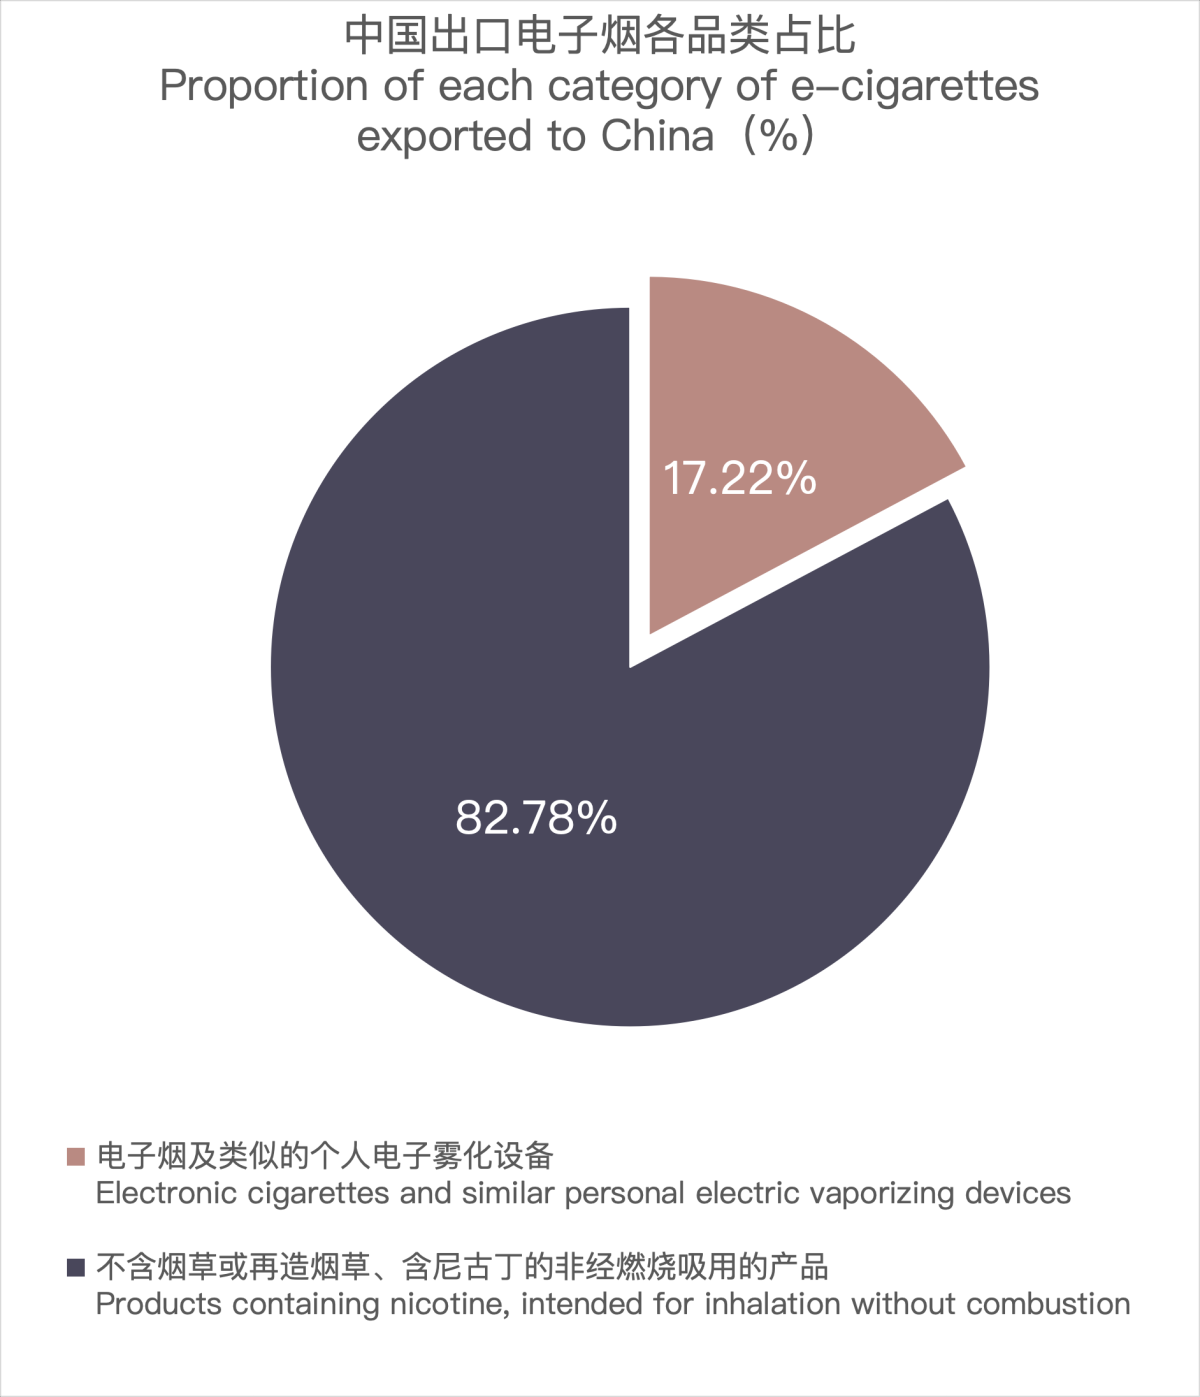 3月中国出口阿联酋电子烟约1073万美元 环比下降26.78%